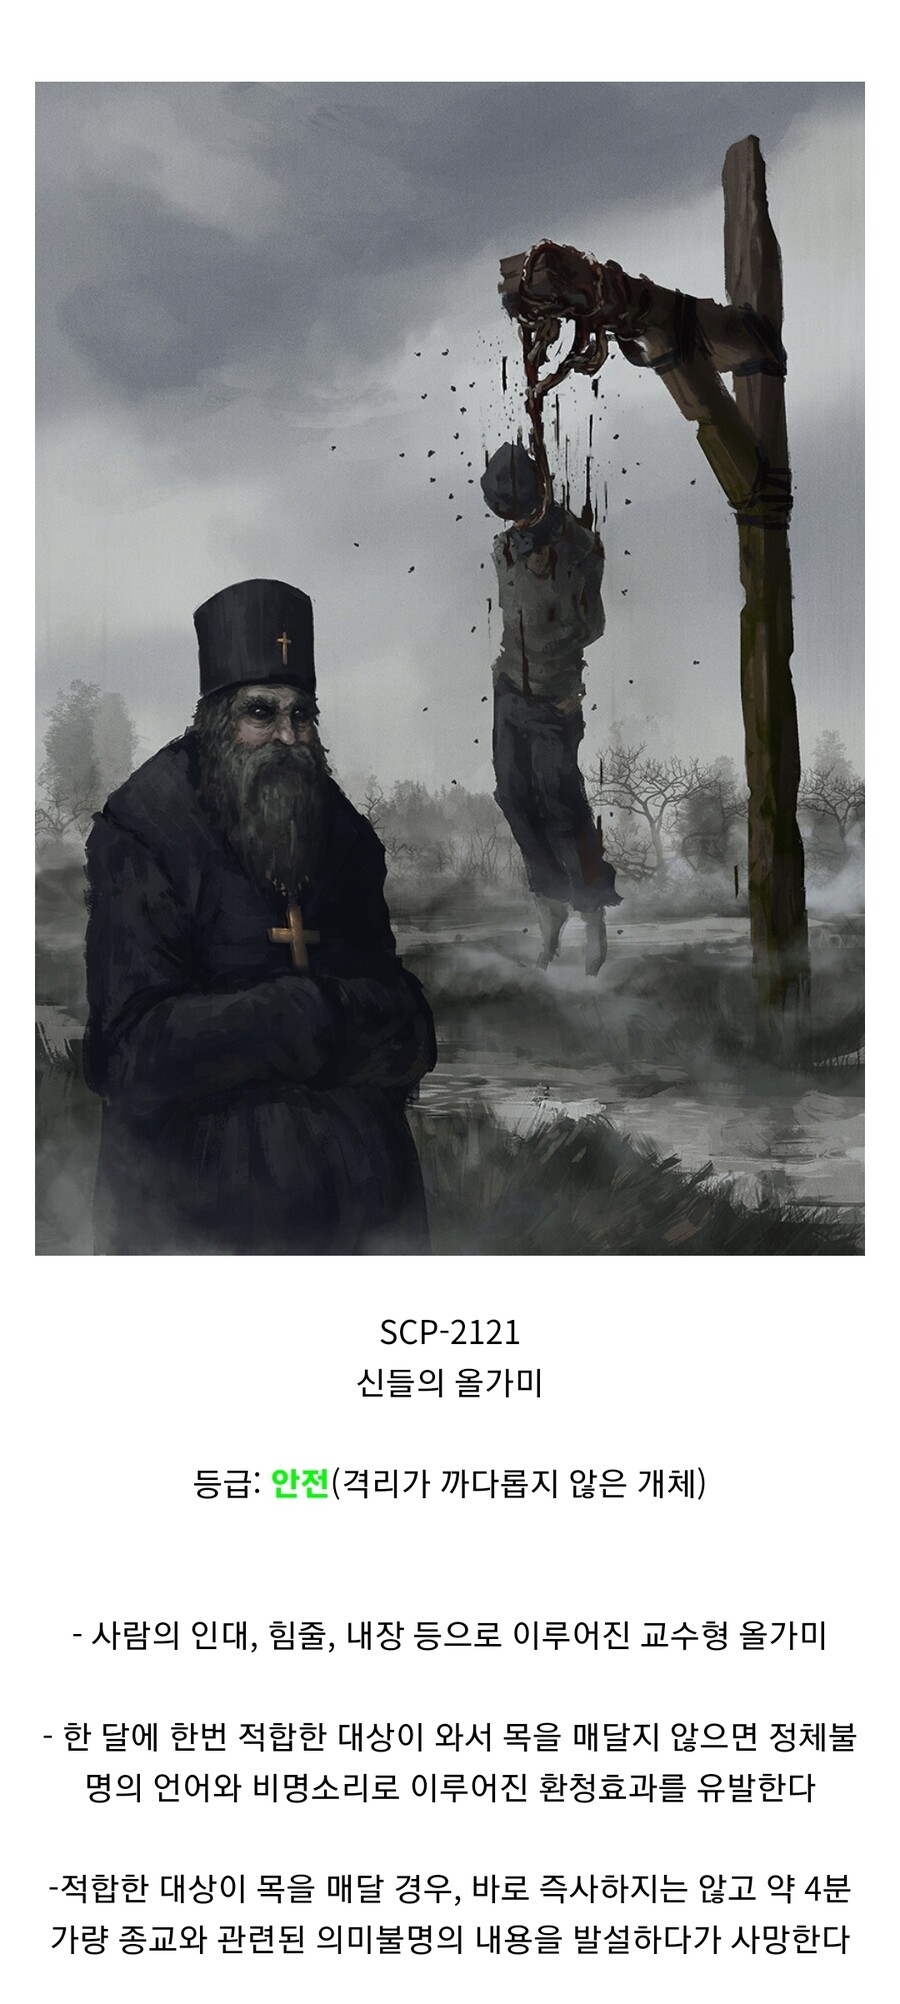 SCP재단/만화/약혐] SCP-1733 시즌 개막전 - 미스터리/공포 - 에펨코리아